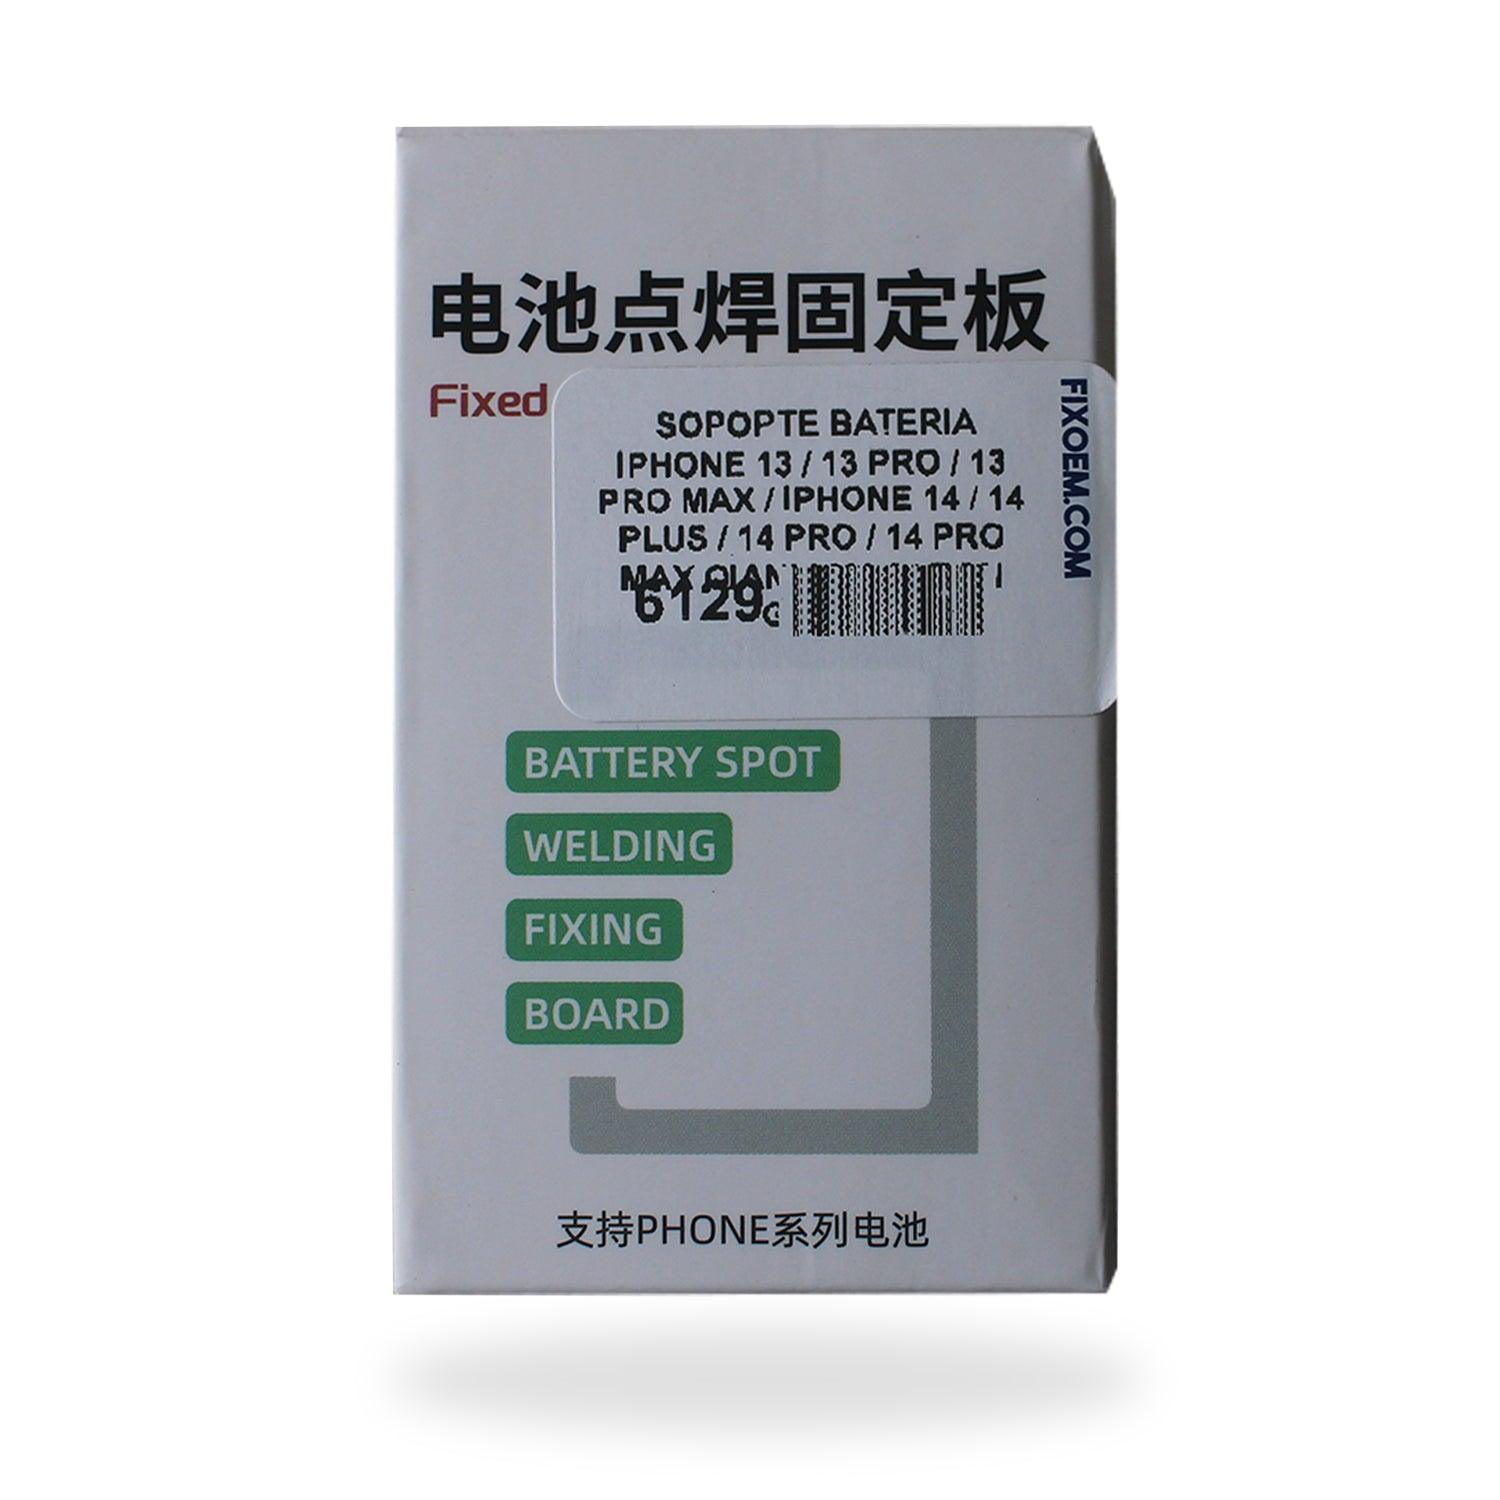 Soporte Bateria Qianli Macaron Gen 2 Iphone 13 - 14 Pro Max a solo $ 300.00 Refaccion y puestos celulares, refurbish y microelectronica.- FixOEM